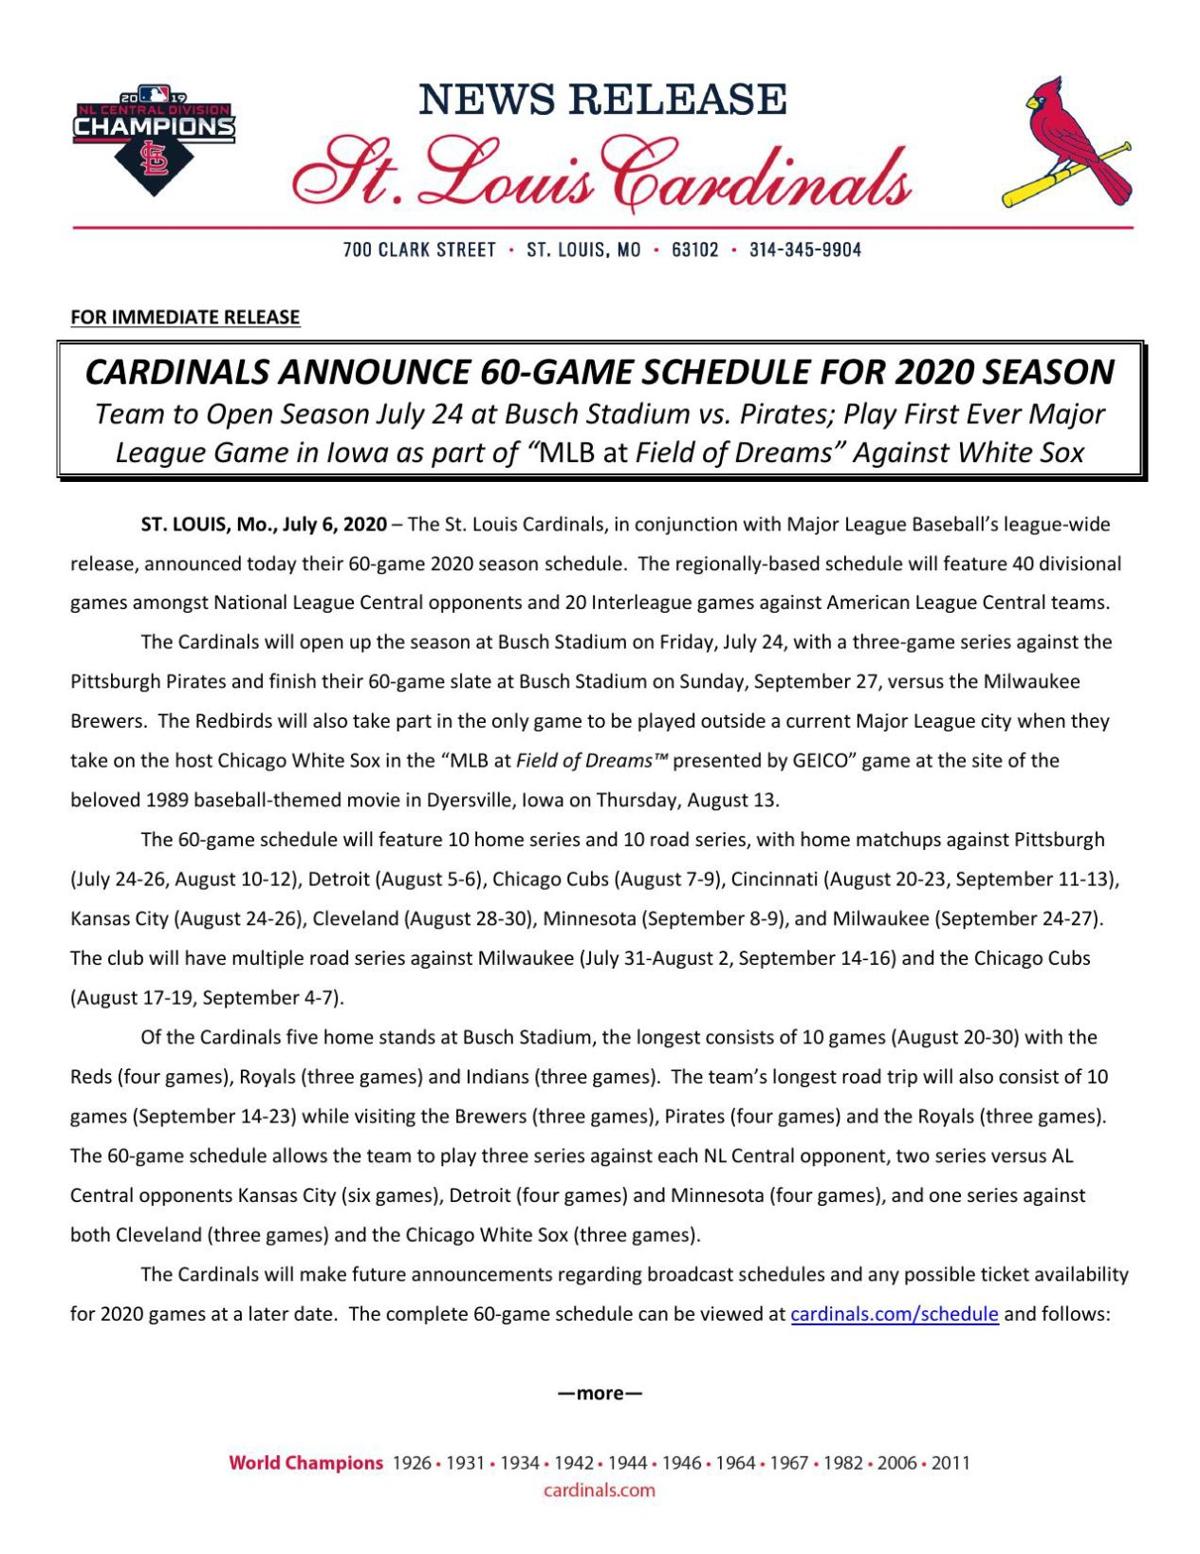 Royals, Cardinals announce regular season schedules | Sports | 0